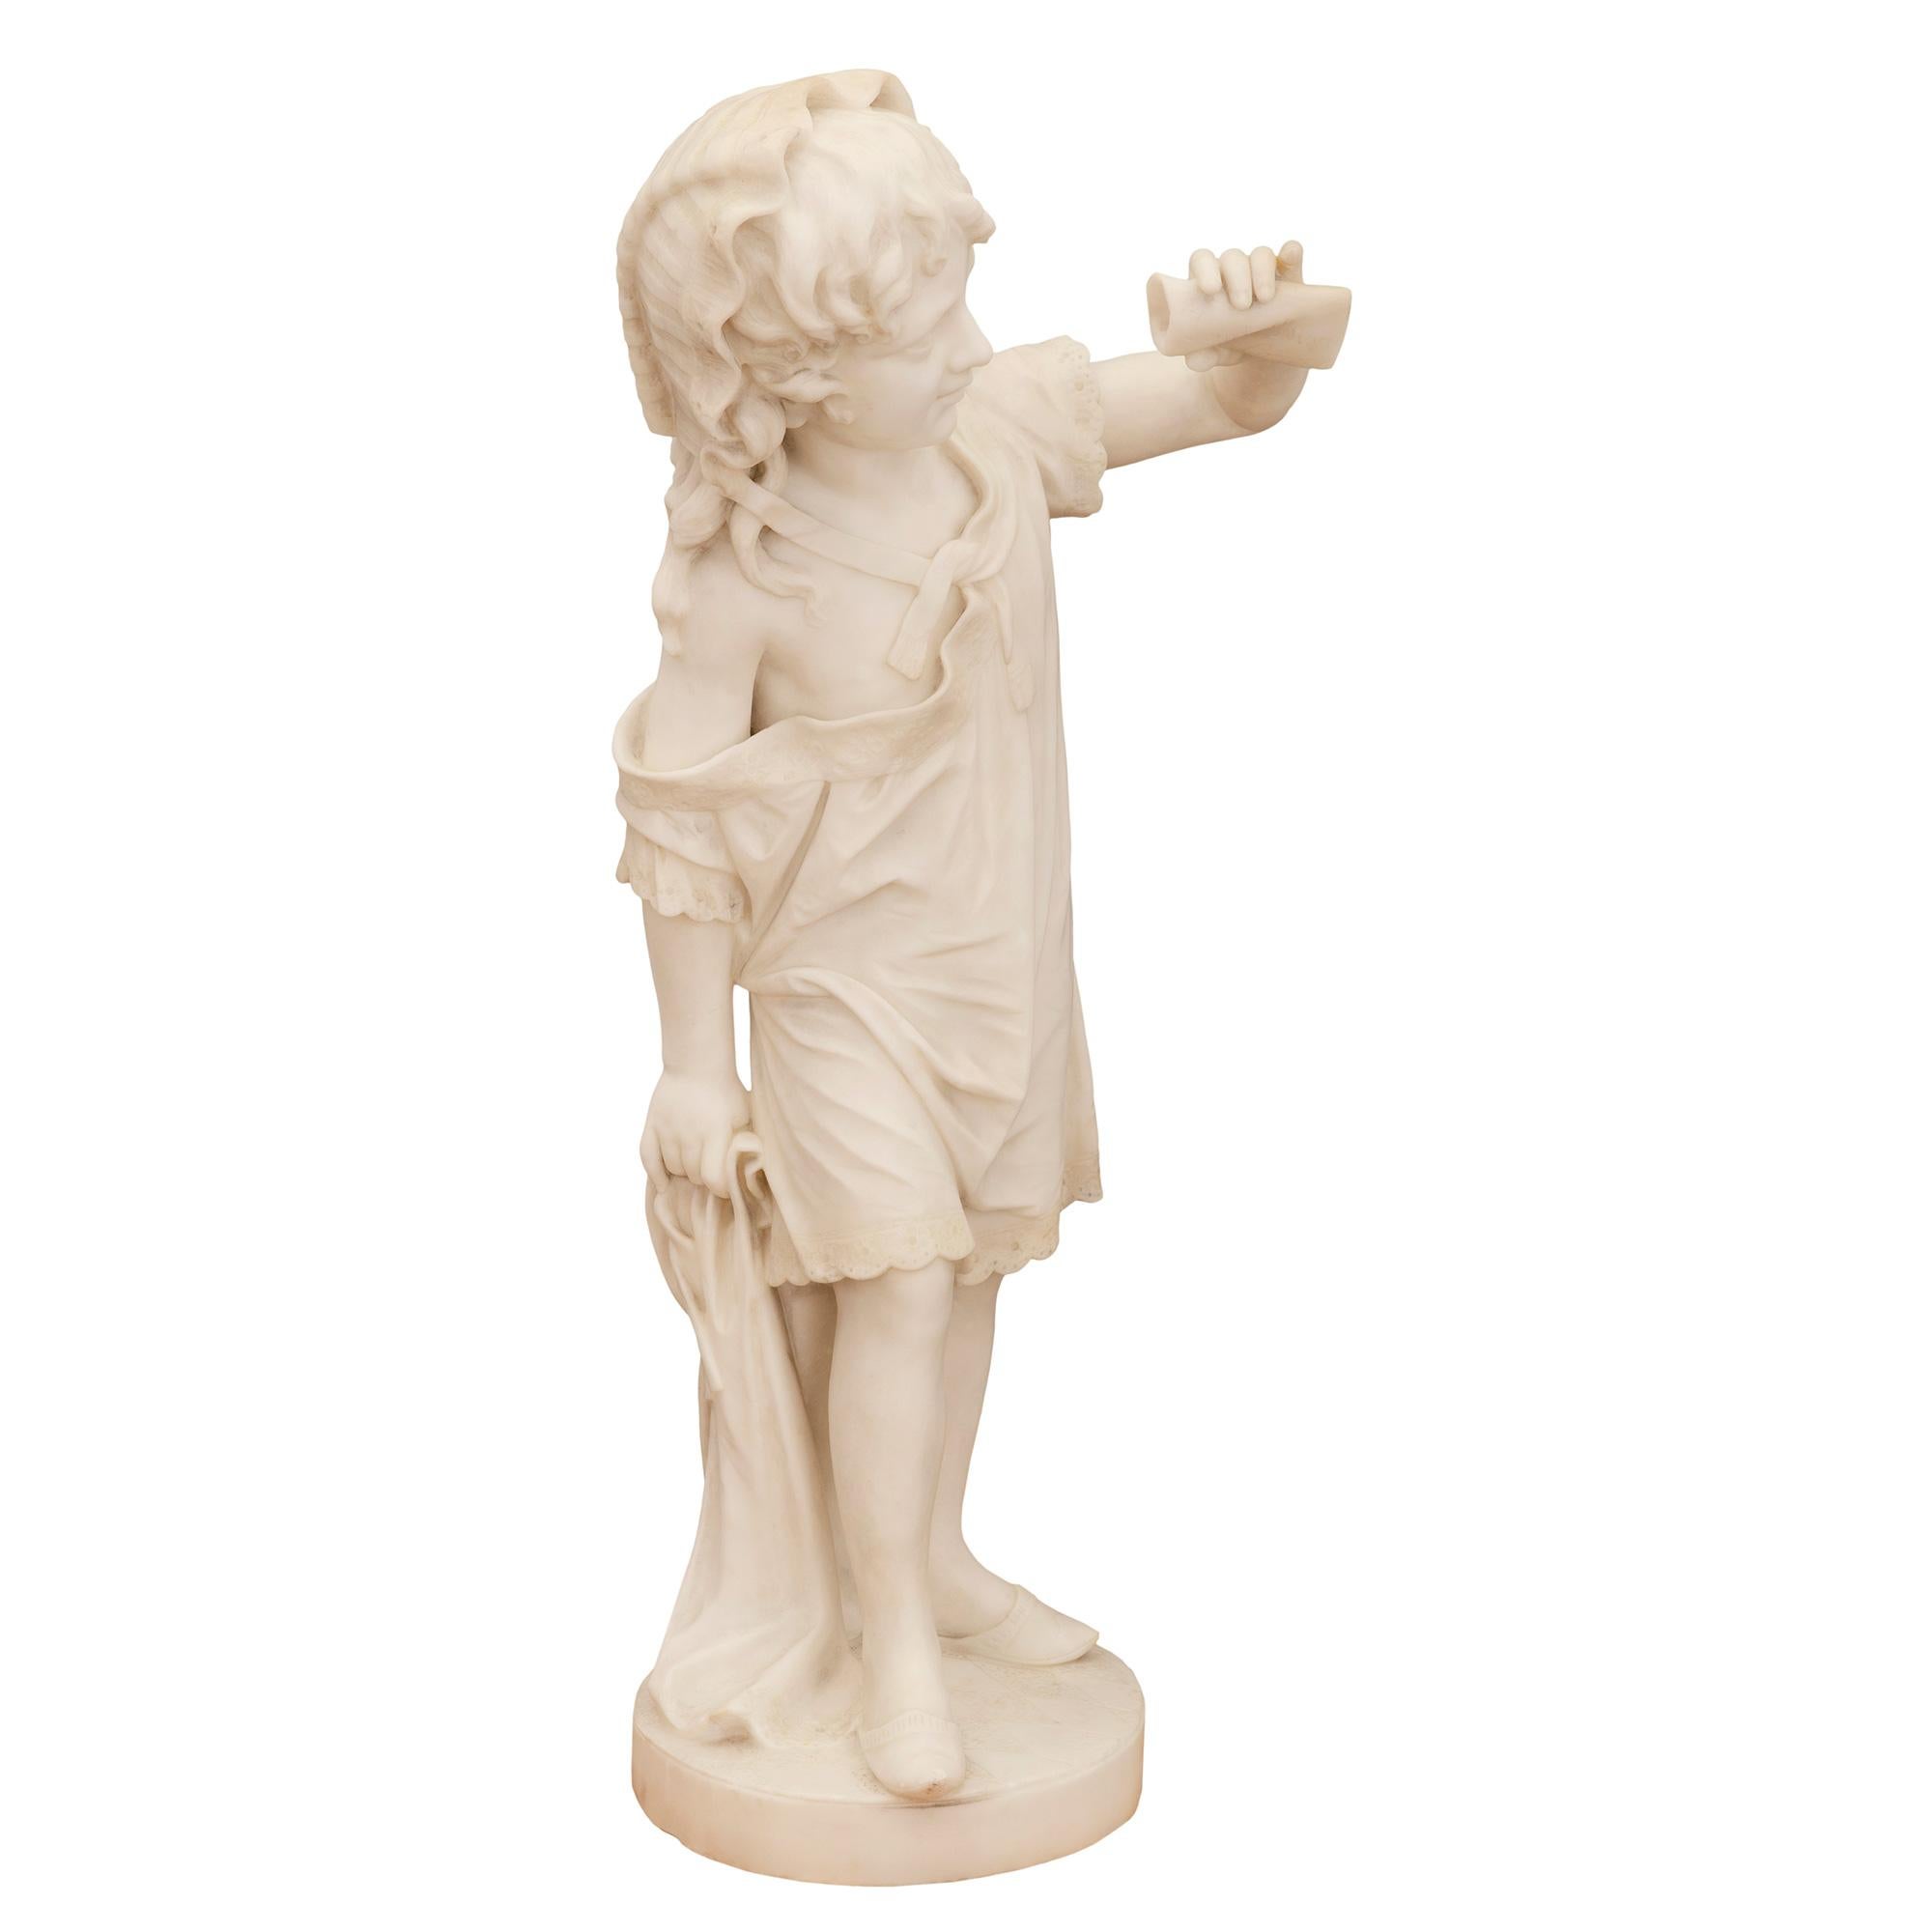 Eine charmante und hochwertige italienische Statue aus weißem Carrara-Marmor aus dem 19. Jahrhundert, die ein junges Mädchen darstellt, das eine Schriftrolle hält. Die Statue steht auf einem runden Sockel mit einem fein gearbeiteten rautenförmigen